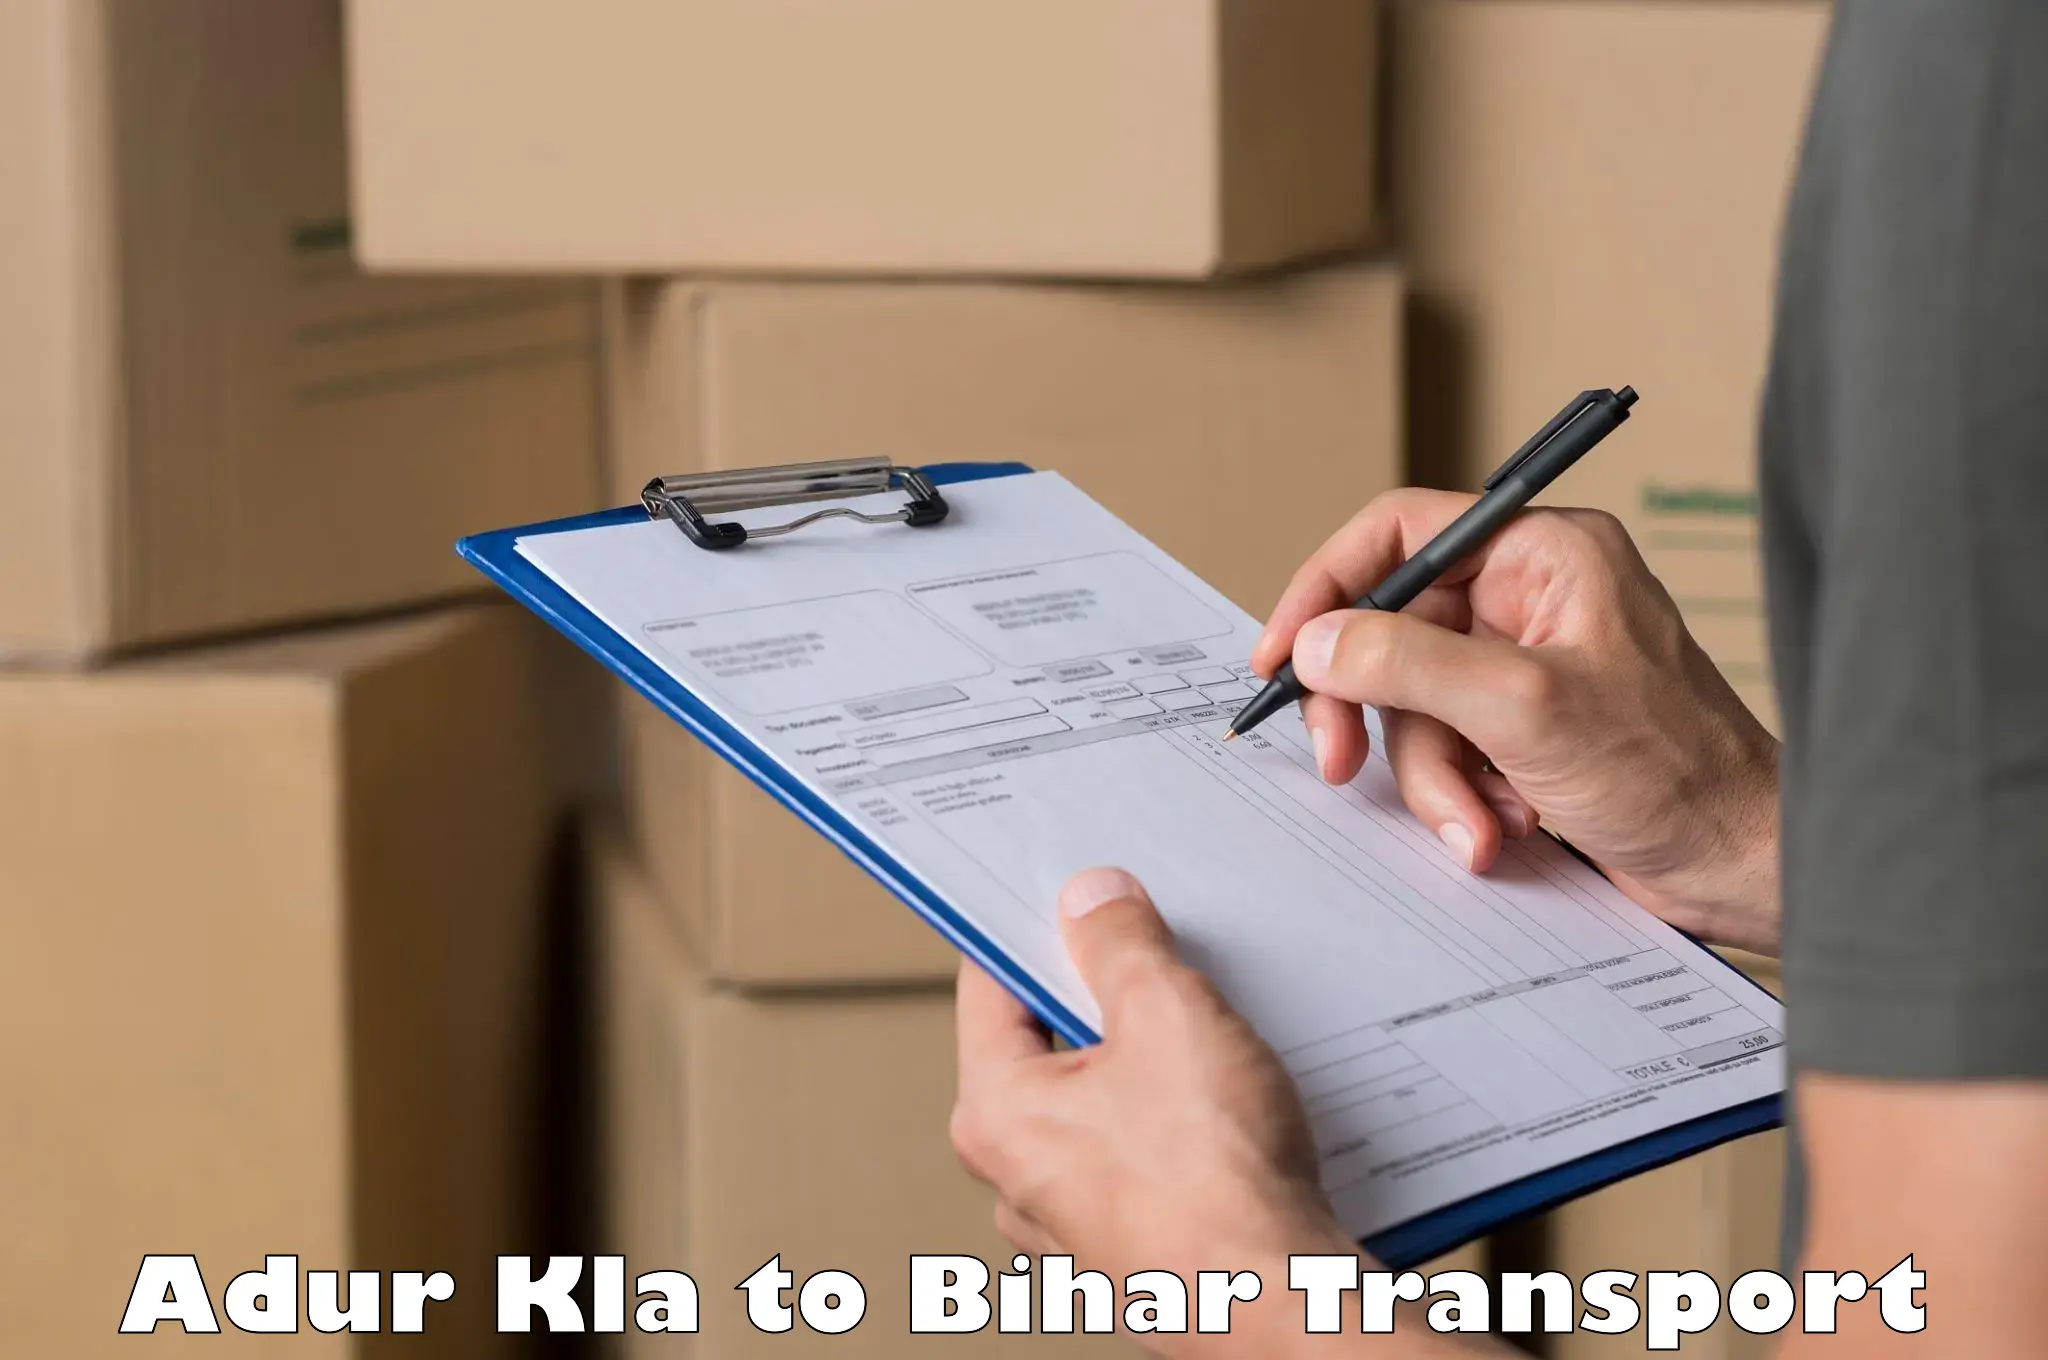 Shipping partner Adur Kla to Bihar